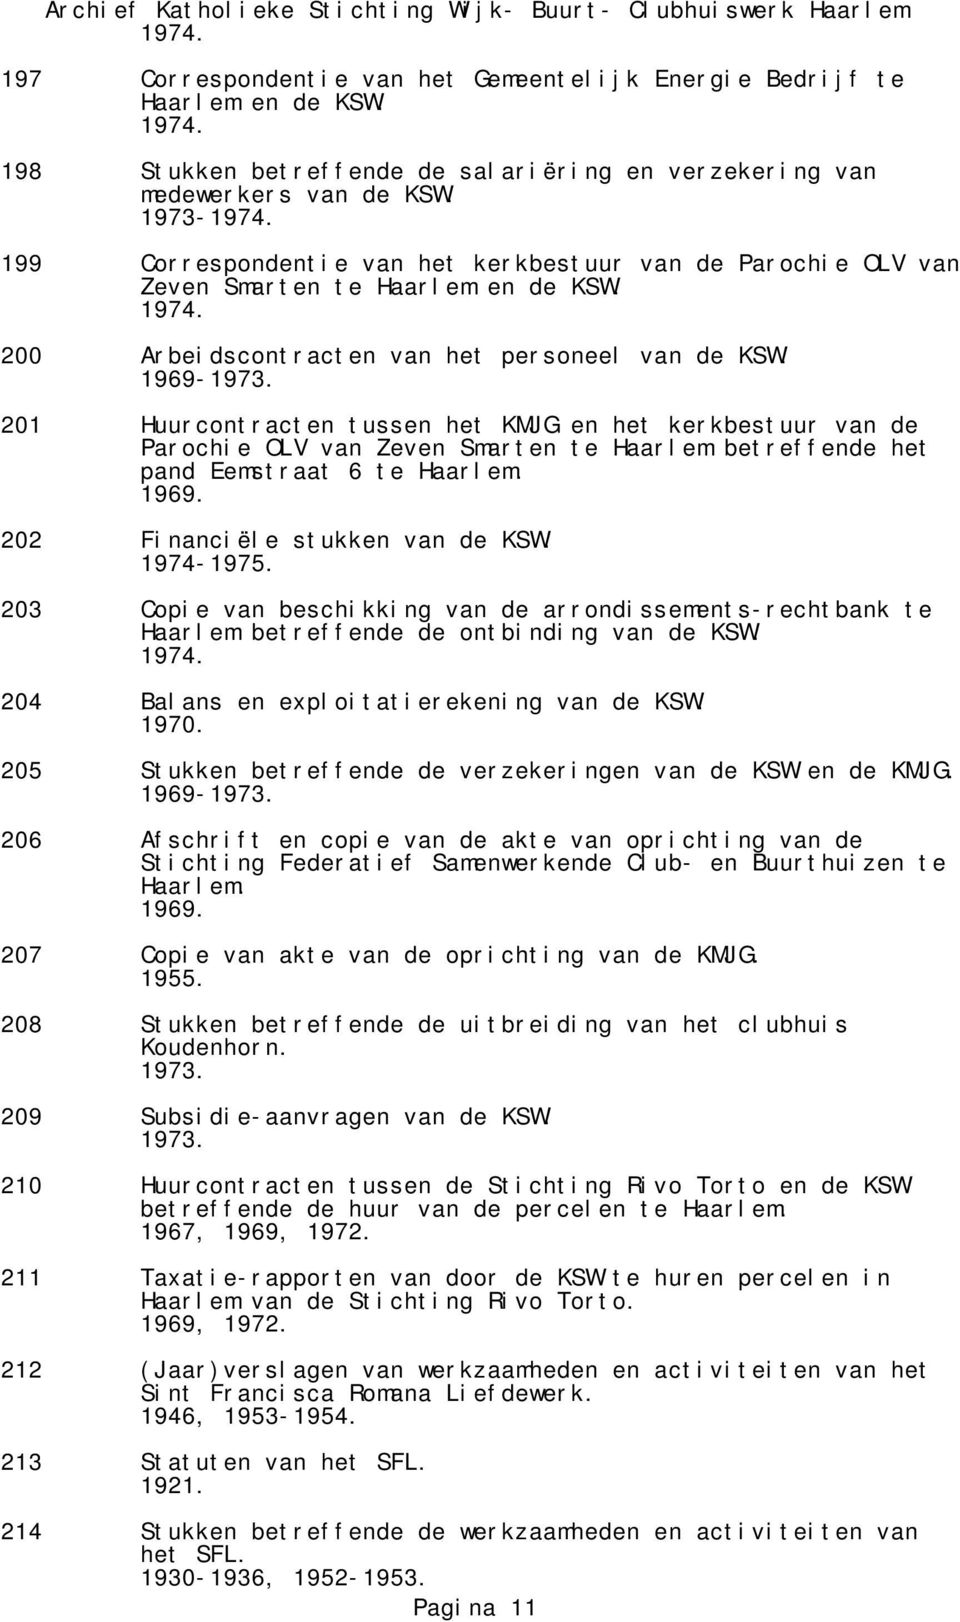 1969-201 Huurcontracten tussen het KMJG en het kerkbestuur van de Parochie OLV van Zeven Smarten te Haarlem betreffende het pand Eemstraat 6 te Haarlem. 202 Financiële stukken van de KSW. 1974-1975.